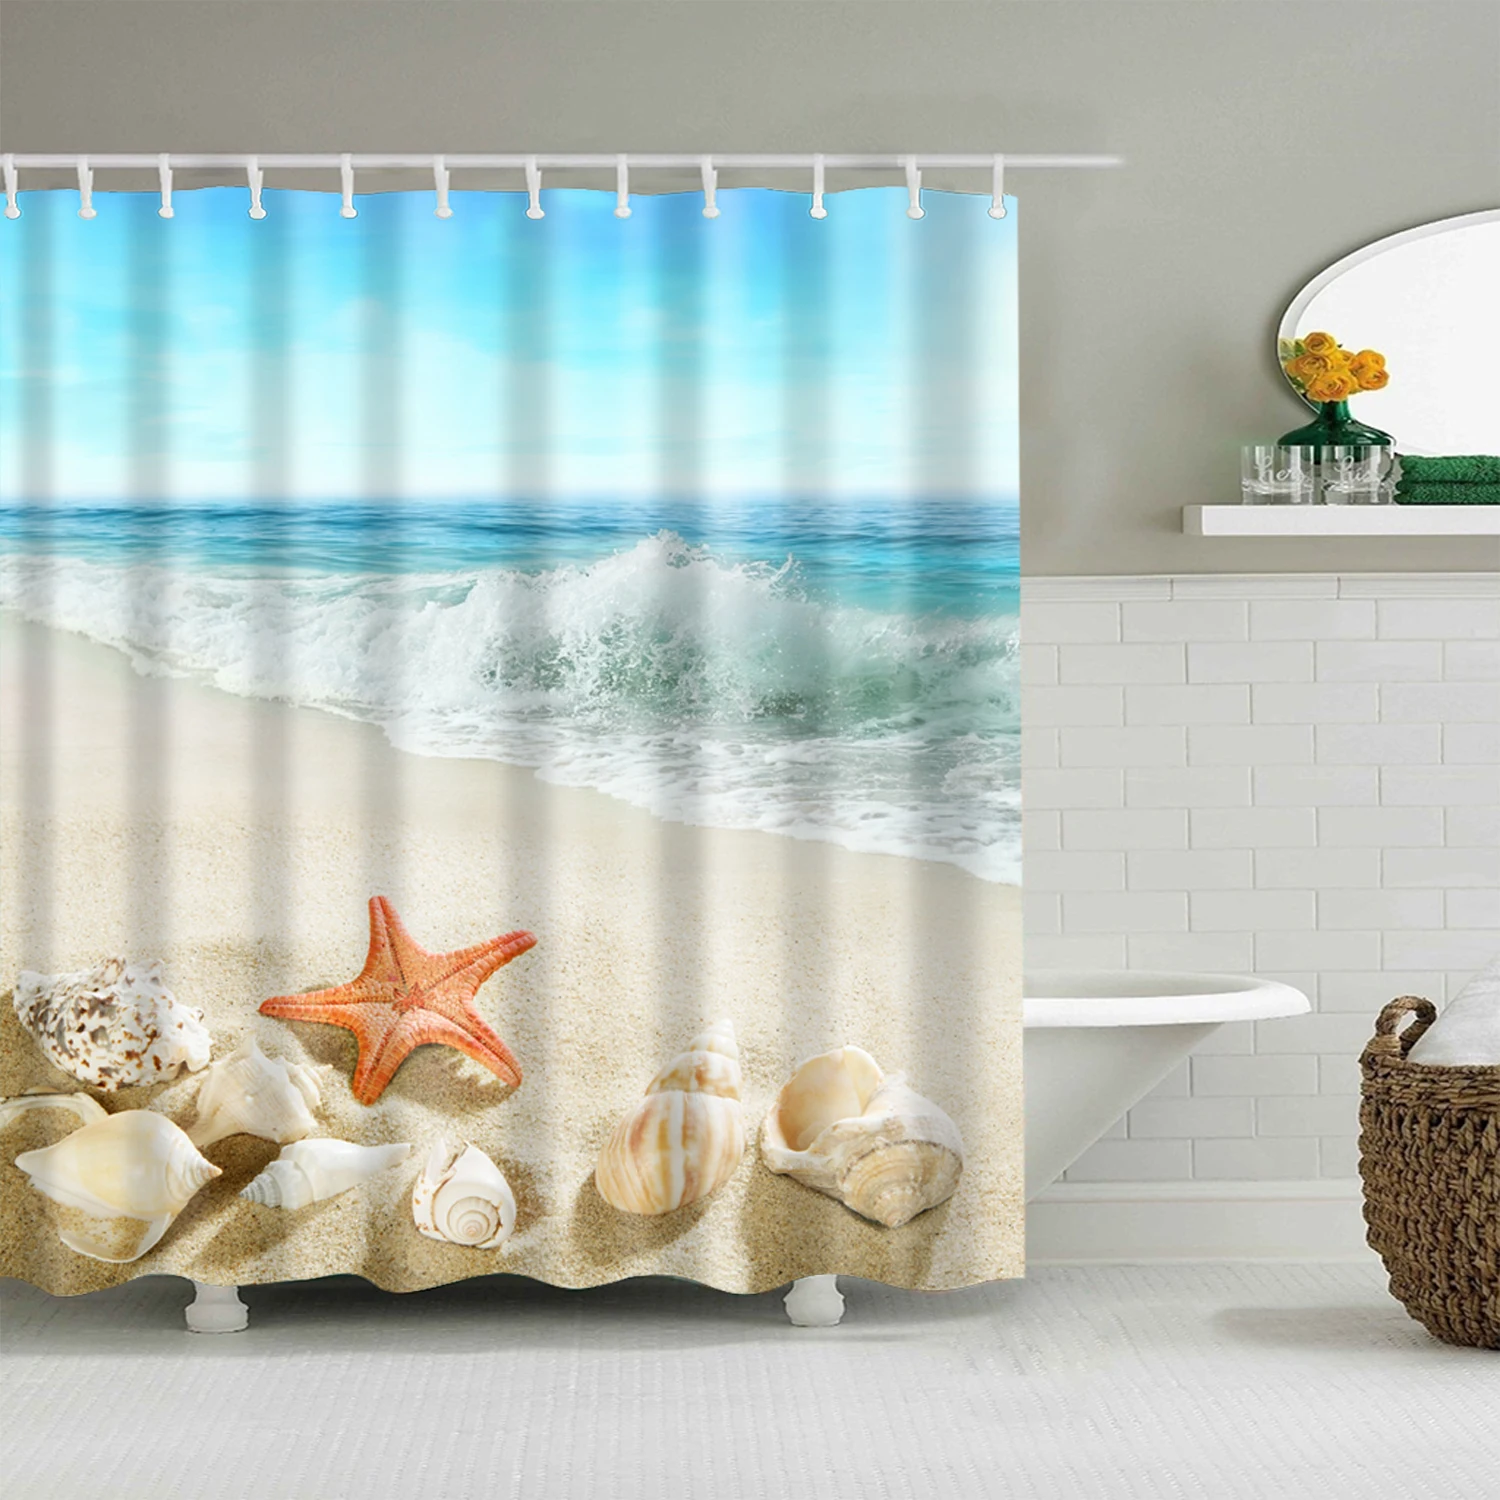 Океанский пляжный Корпус 3d занавеска для Ванной Душа s Декор Водонепроницаемый полиэстер ткань моющаяся ванная душевая занавеска набор с крючками